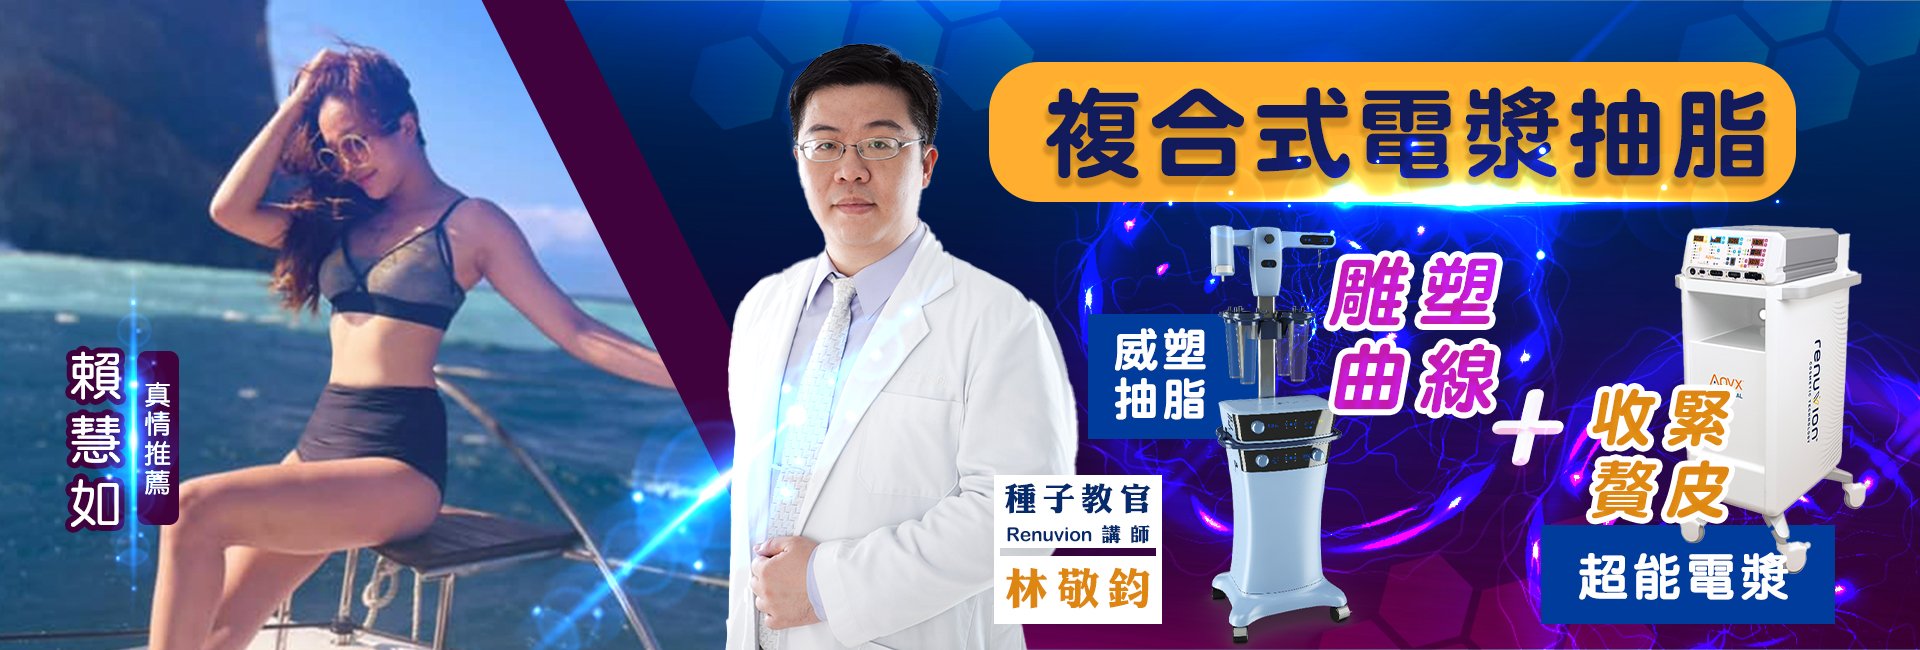 台灣區首席種子教官林敬鈞醫師幫民視藝人賴慧如進行超能電漿抽脂手術